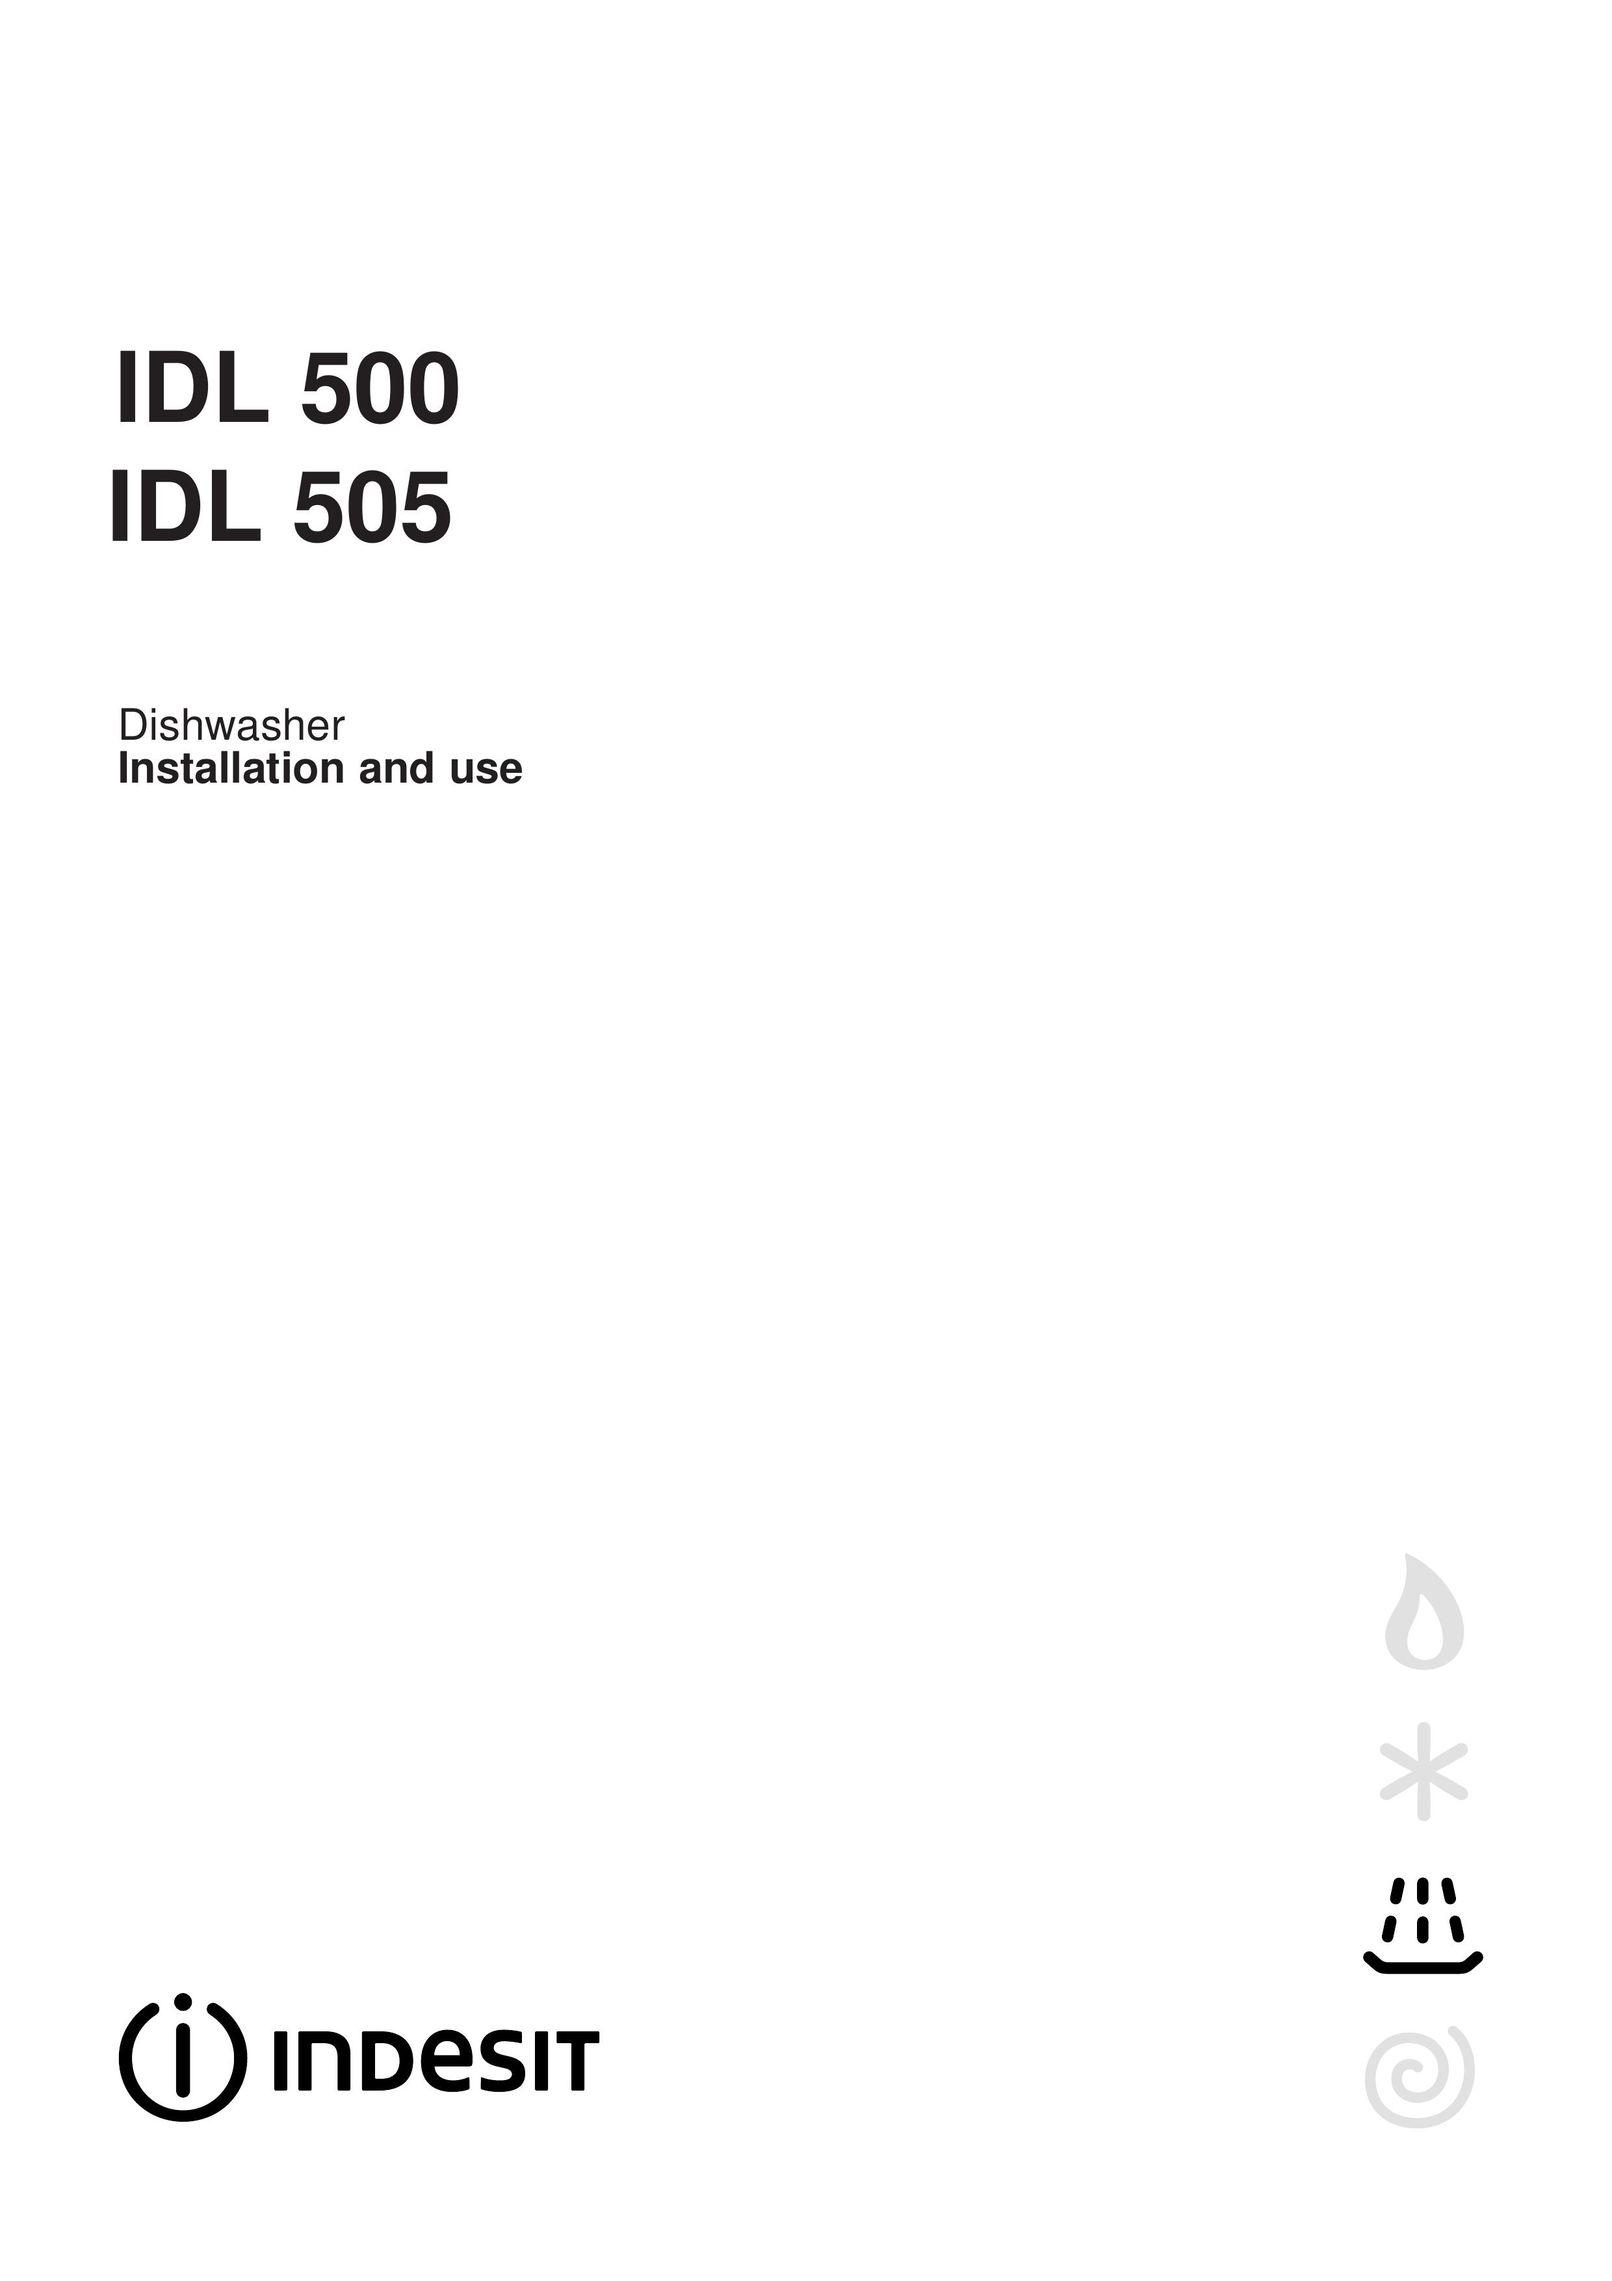 Indesit IDL 505 Dishwasher User Manual